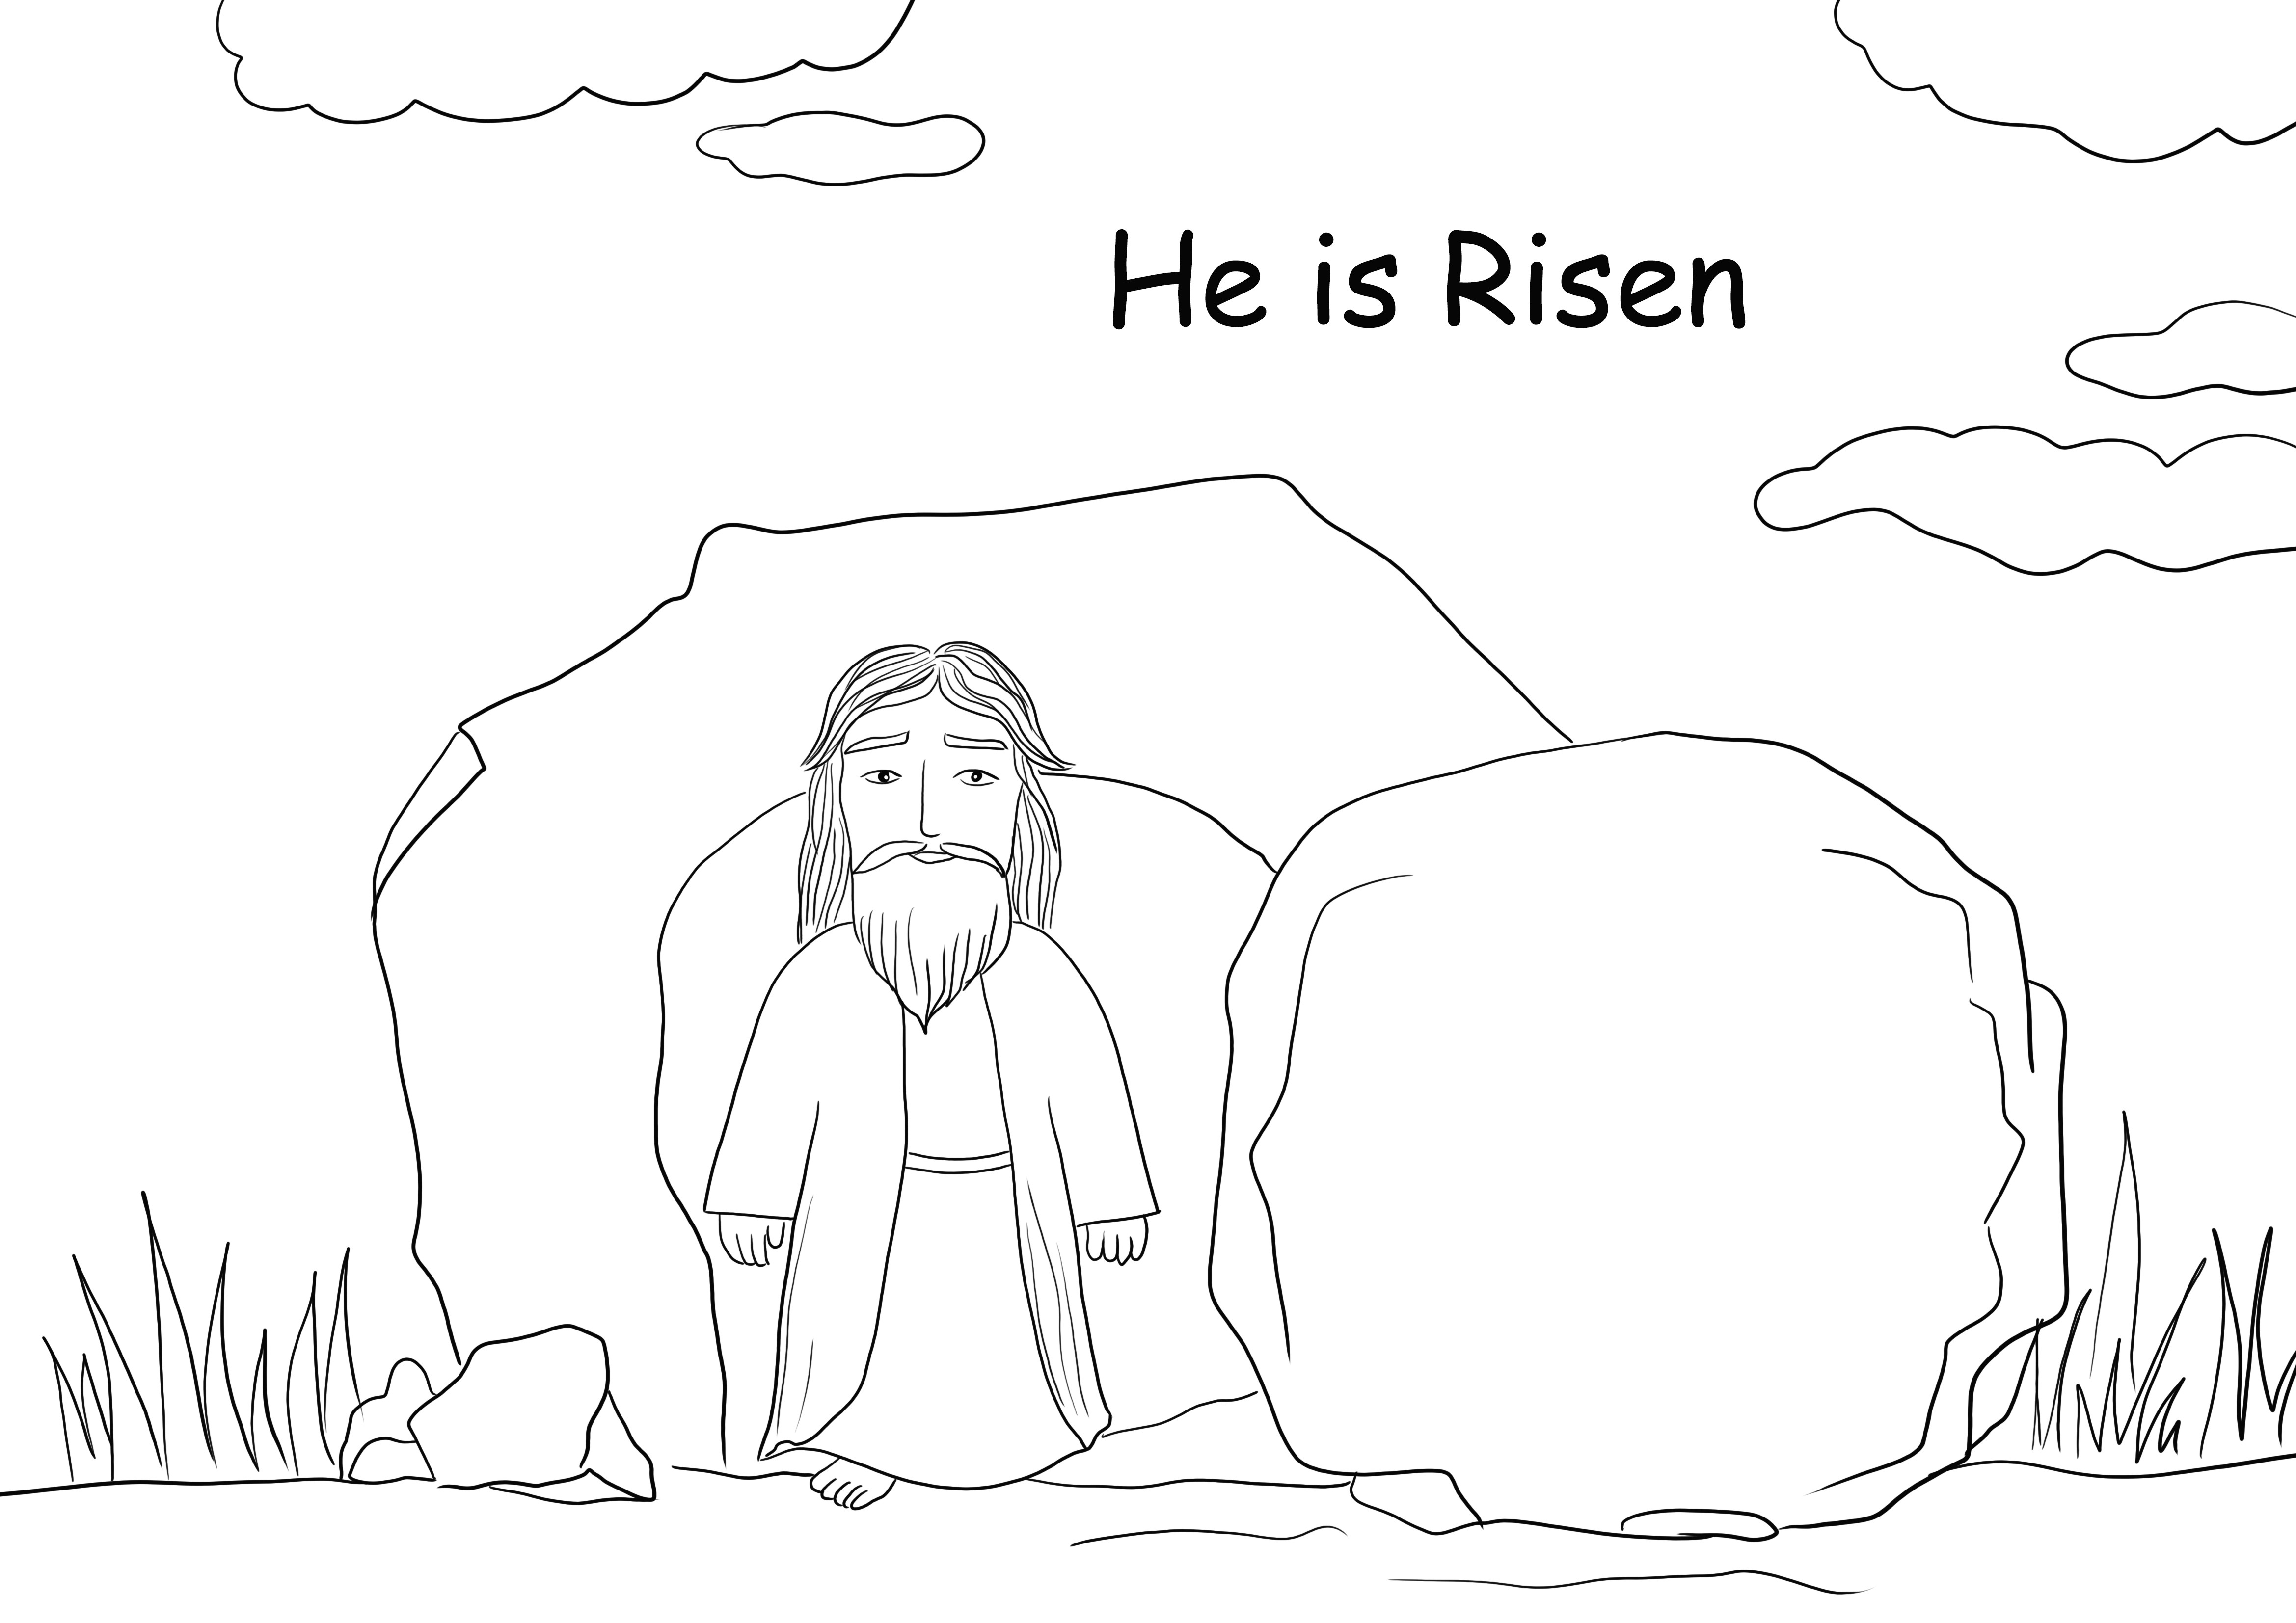 Plansa de colorat Invierea lui Iisus este gratuit pentru imprimare sau salvare pentru mai tarziu si colorat